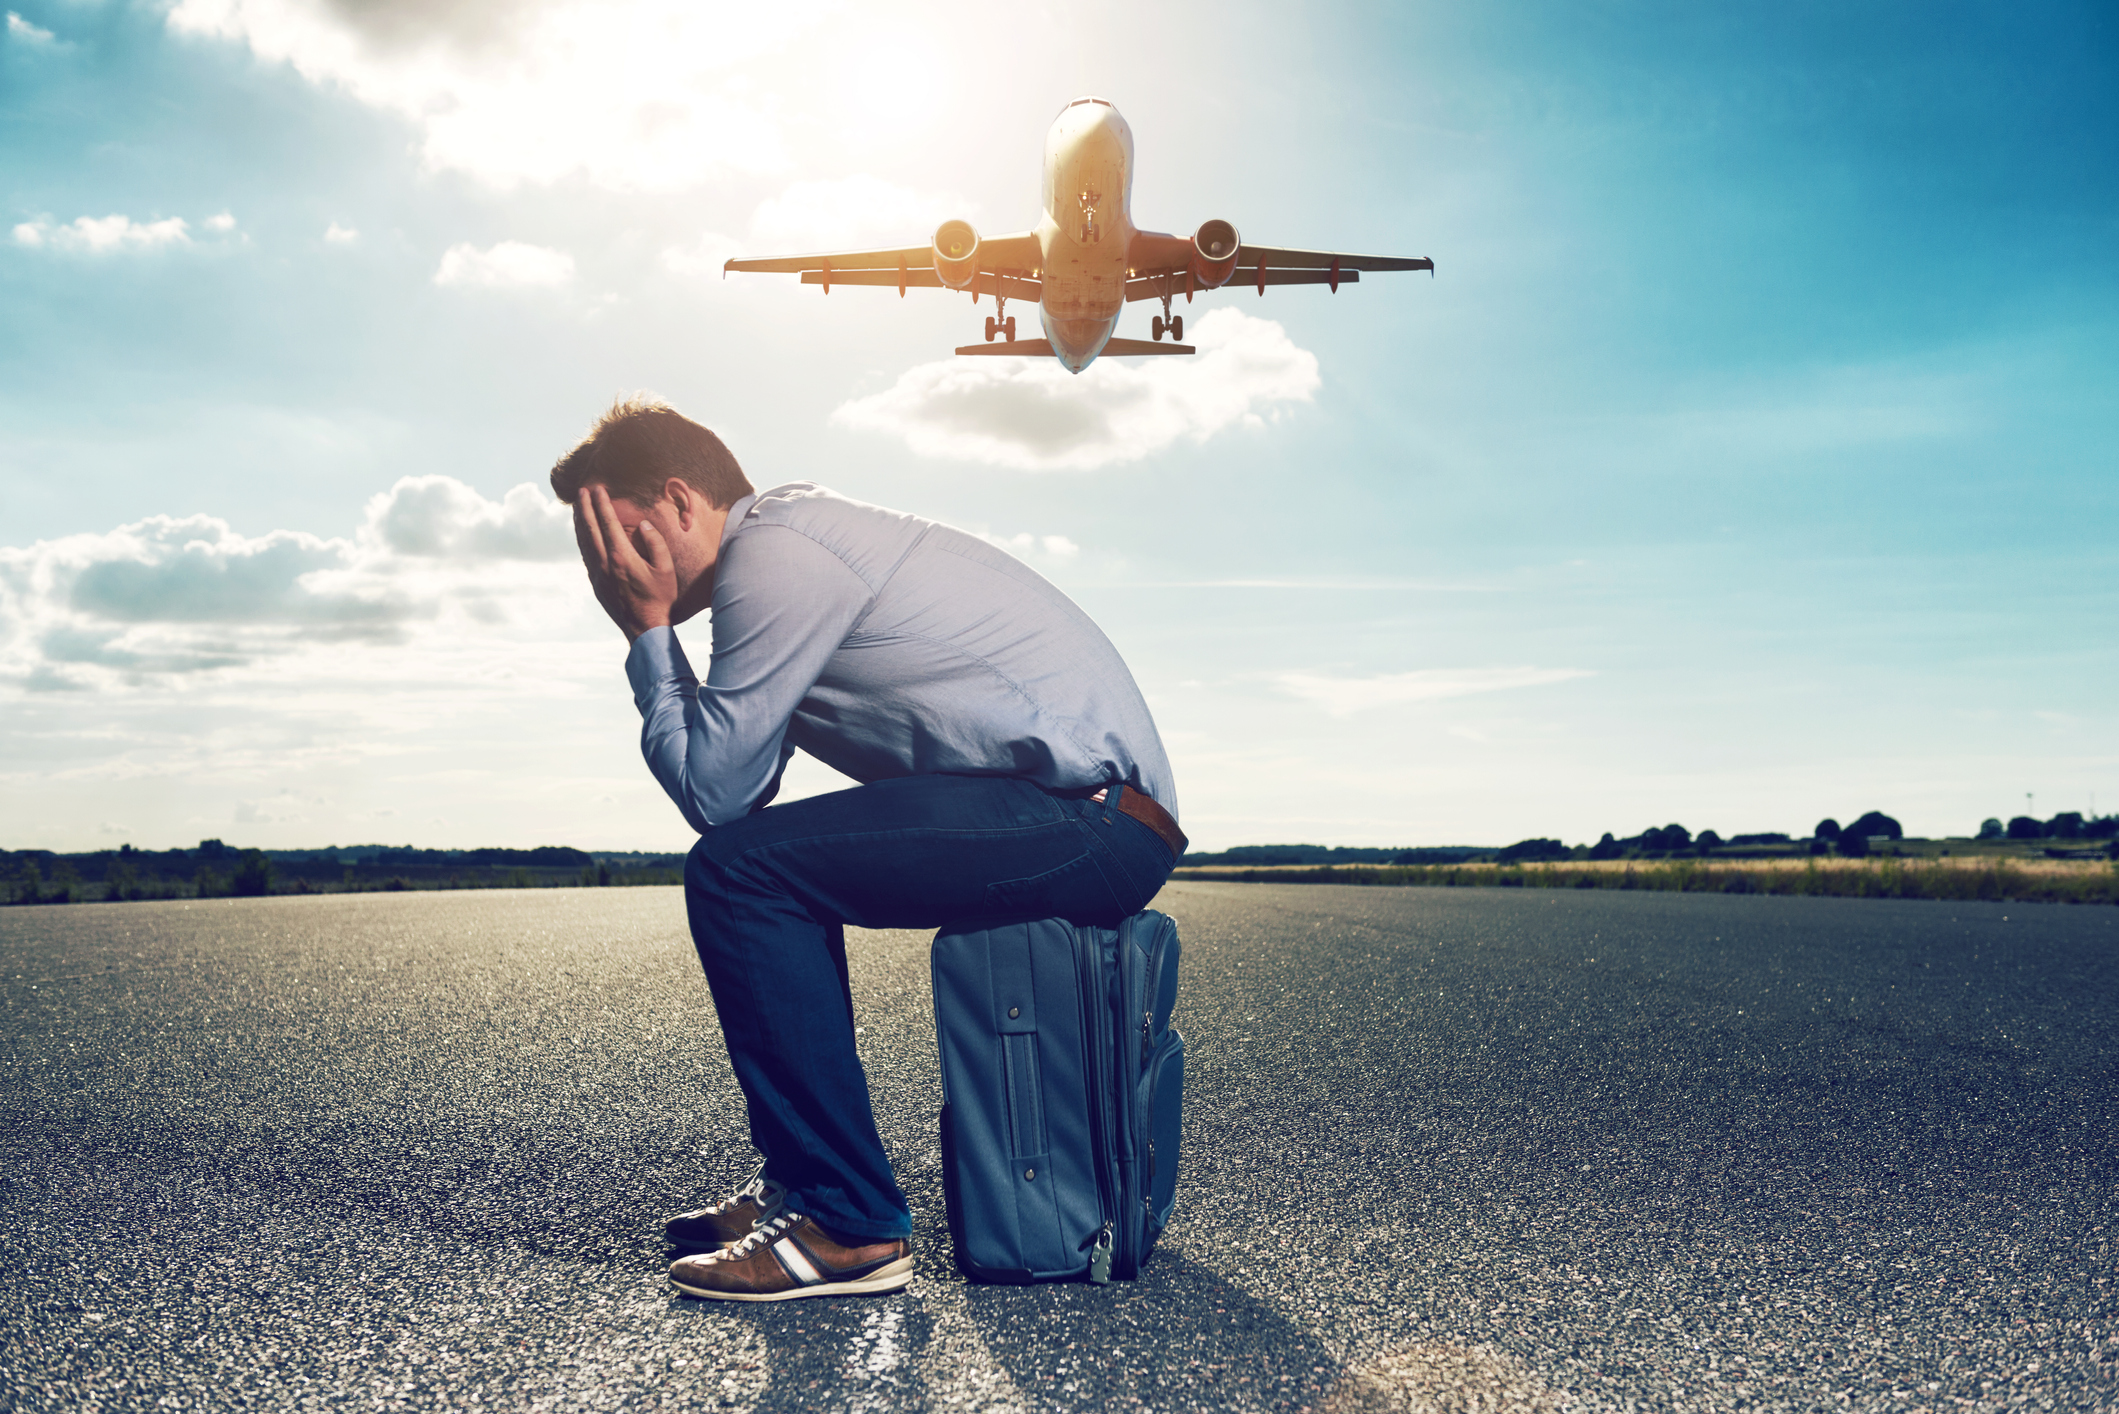 Een man zit op een blauwe koffer met zijn handen voor zijn gezicht terwijl achter hem een vliegtuig vliegt.